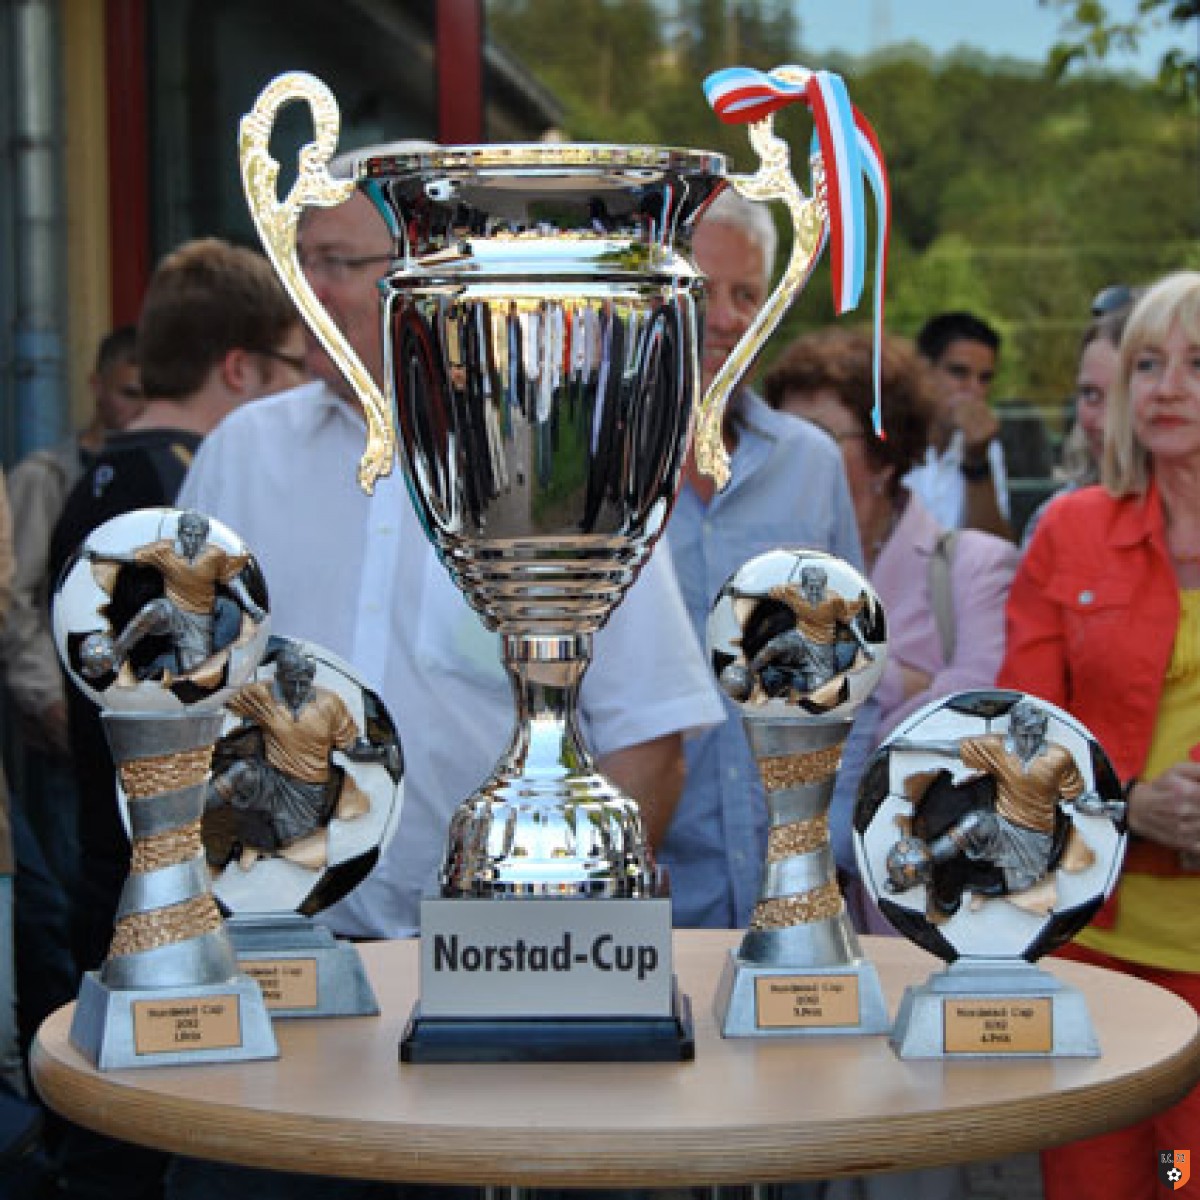 Nordstad-Cup 2012